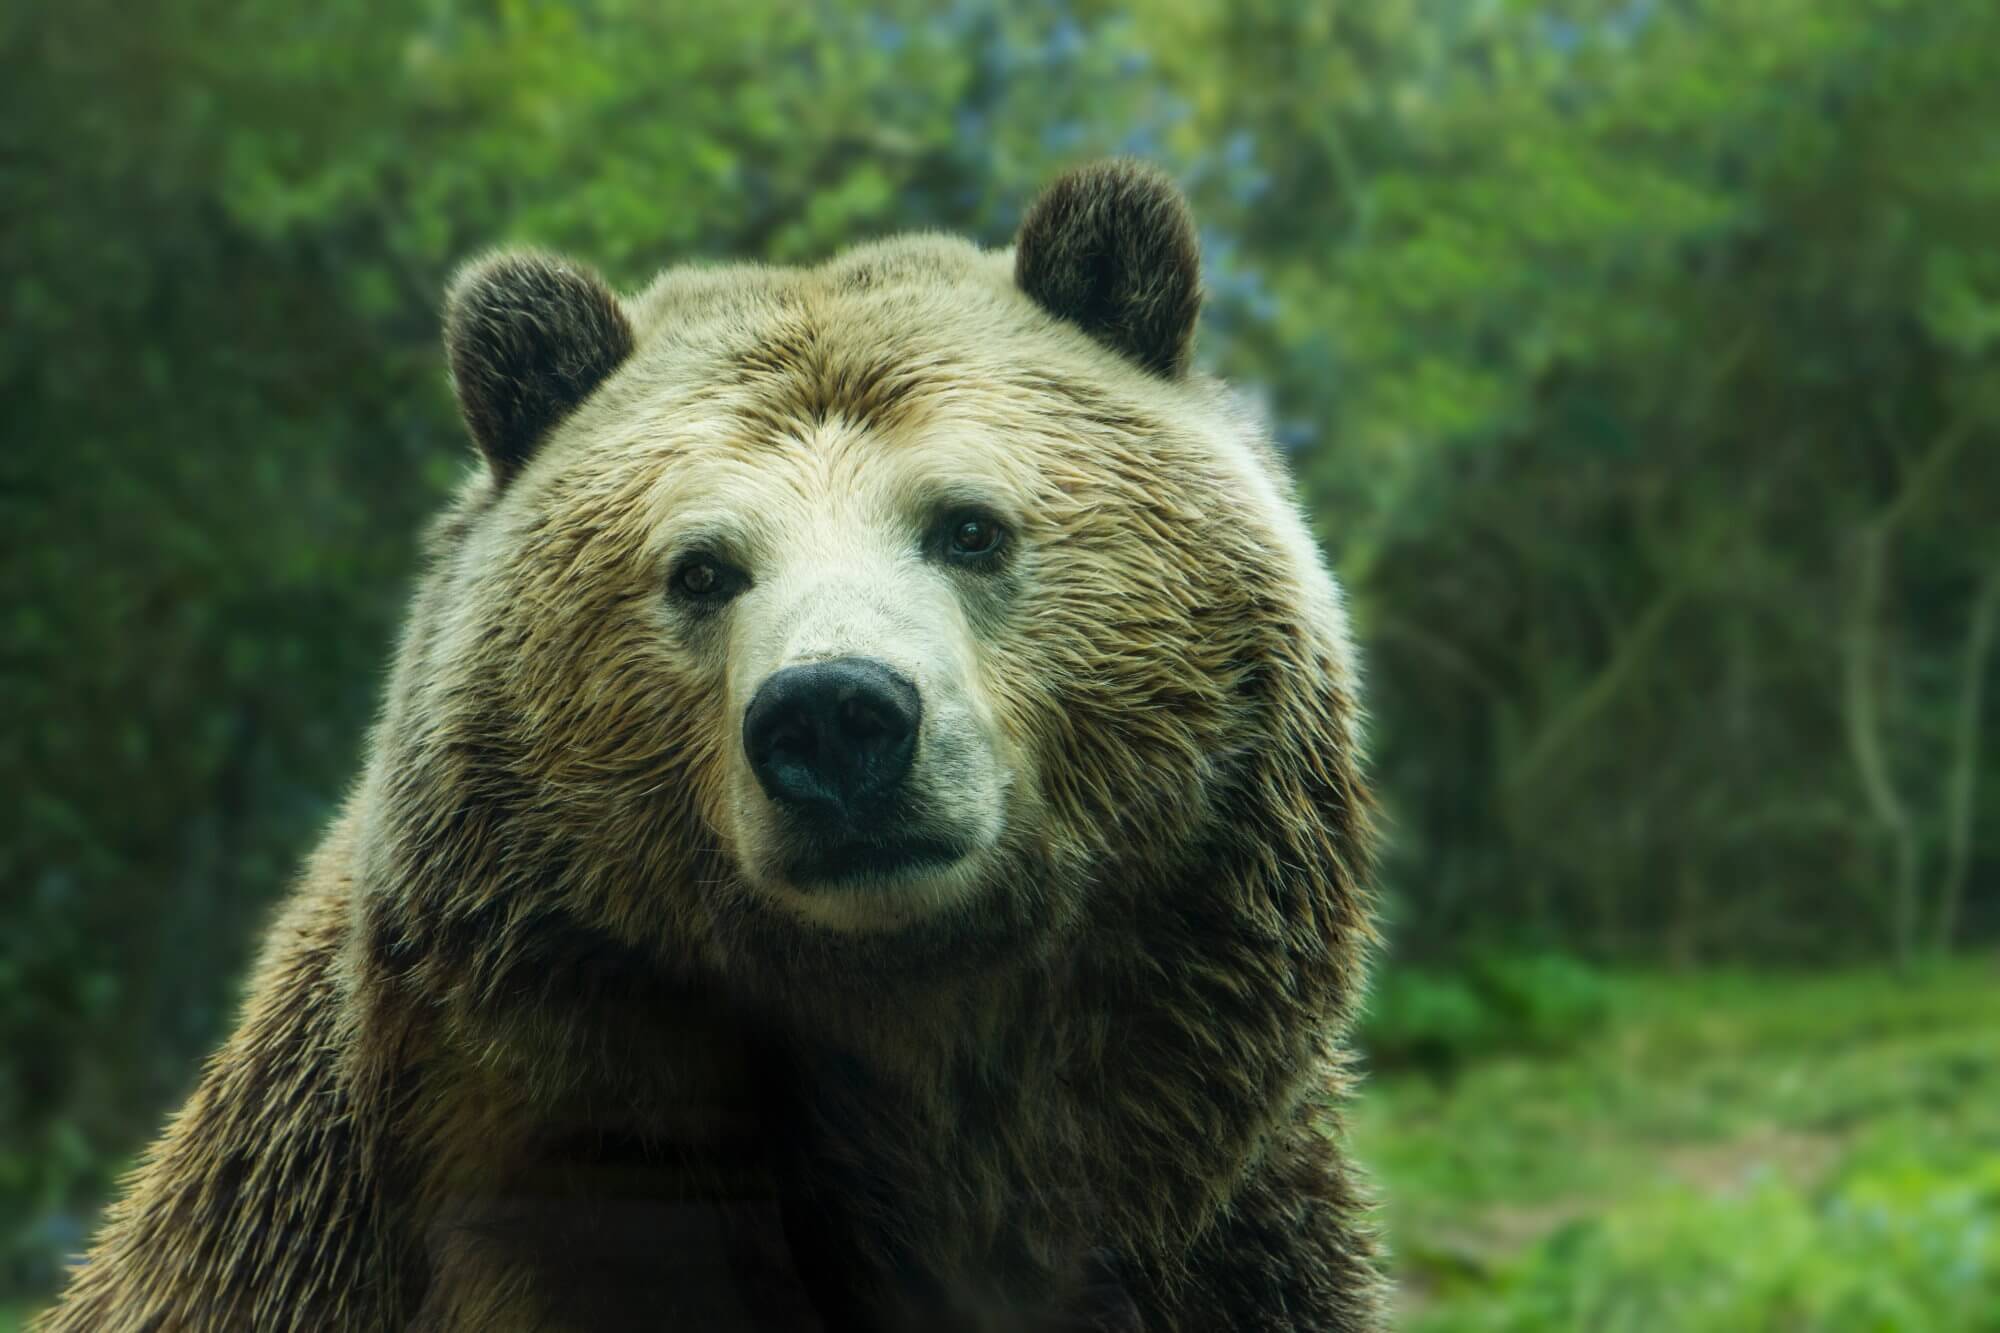 Gli orsi sono diventati più spesso di attaccare le persone. A che è dovuto?